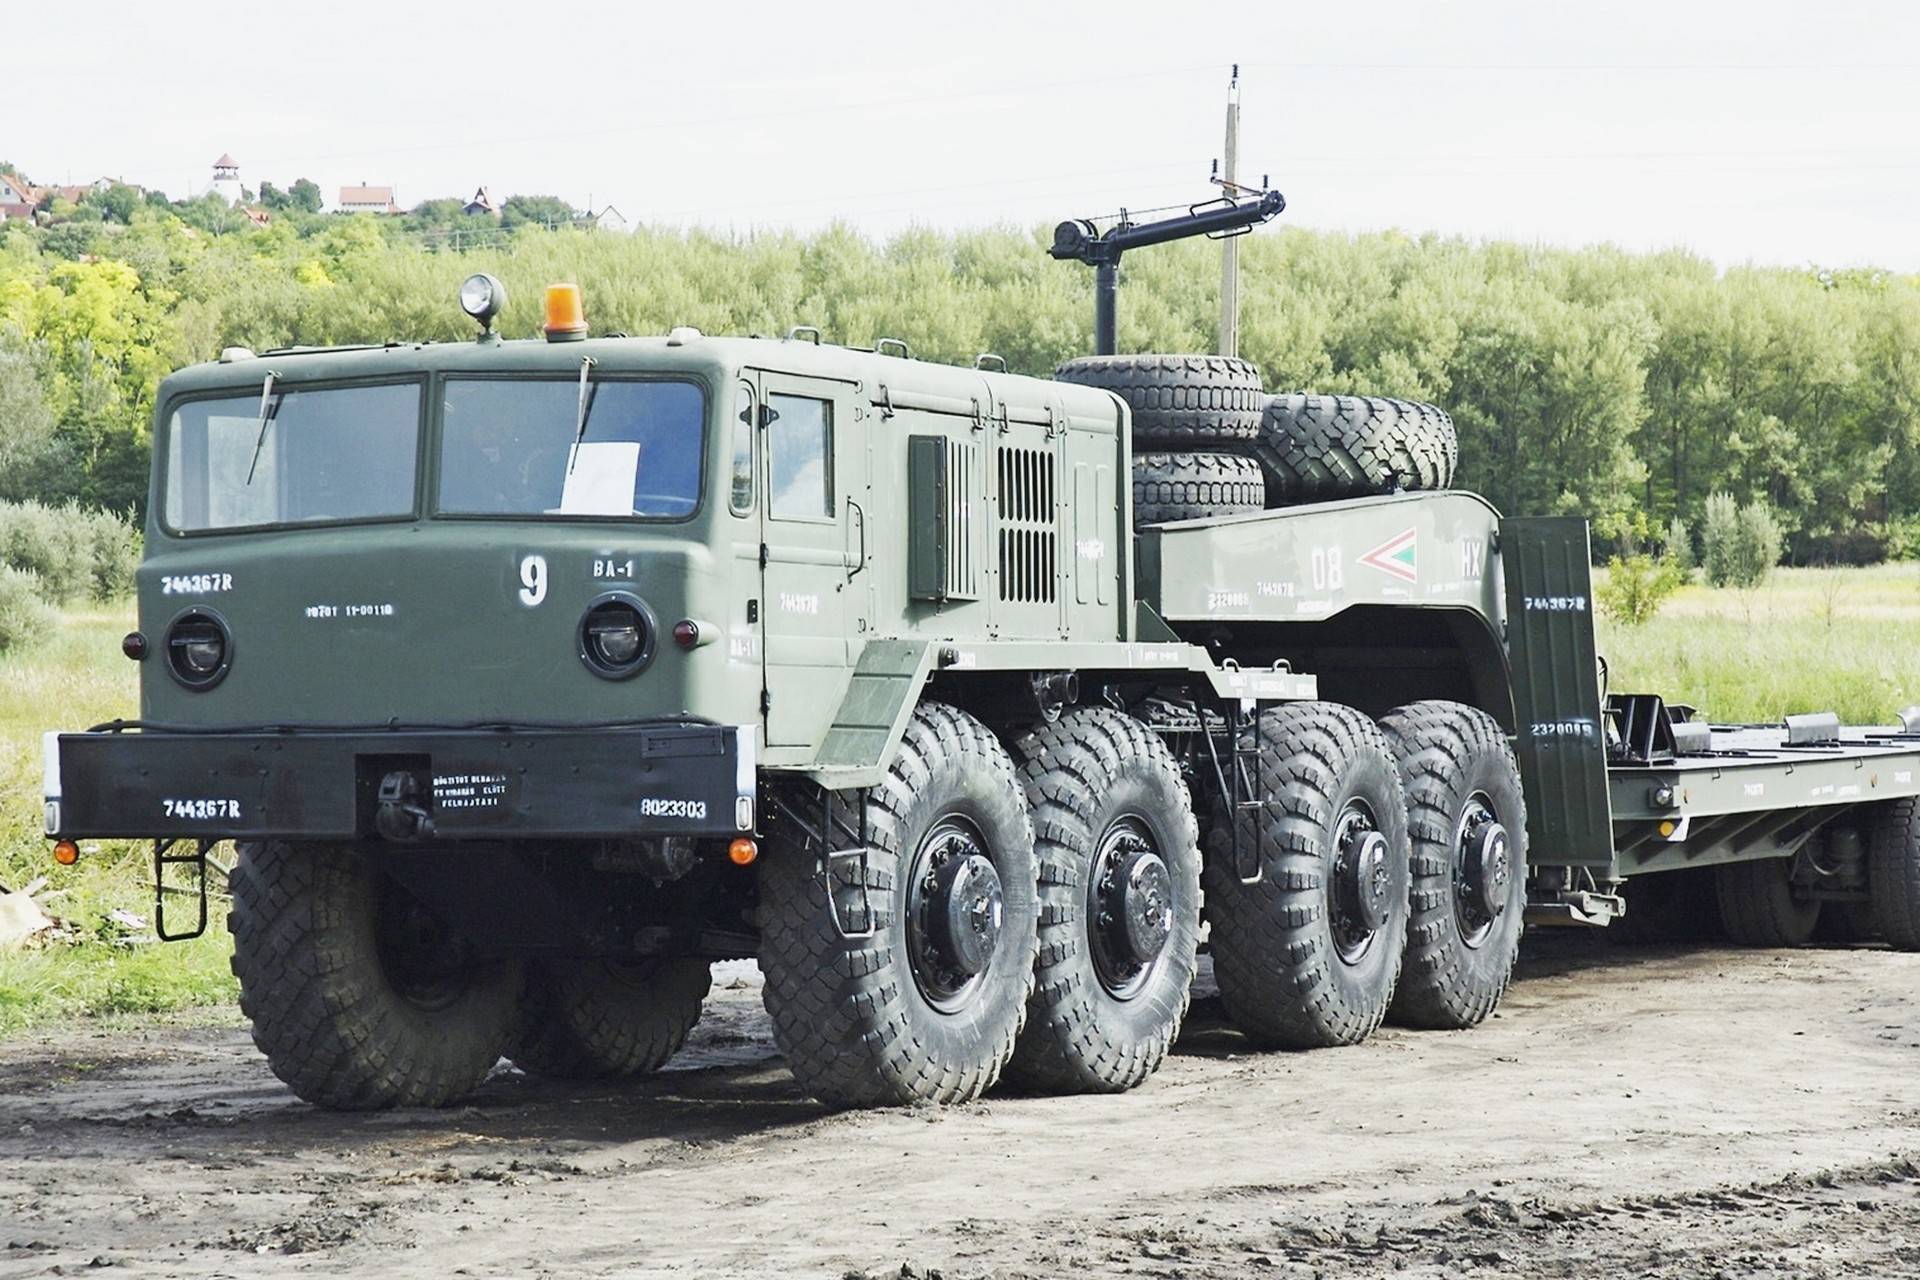 Четырехосный седельный военный тягач маз-537 производства минского автомобильного завода